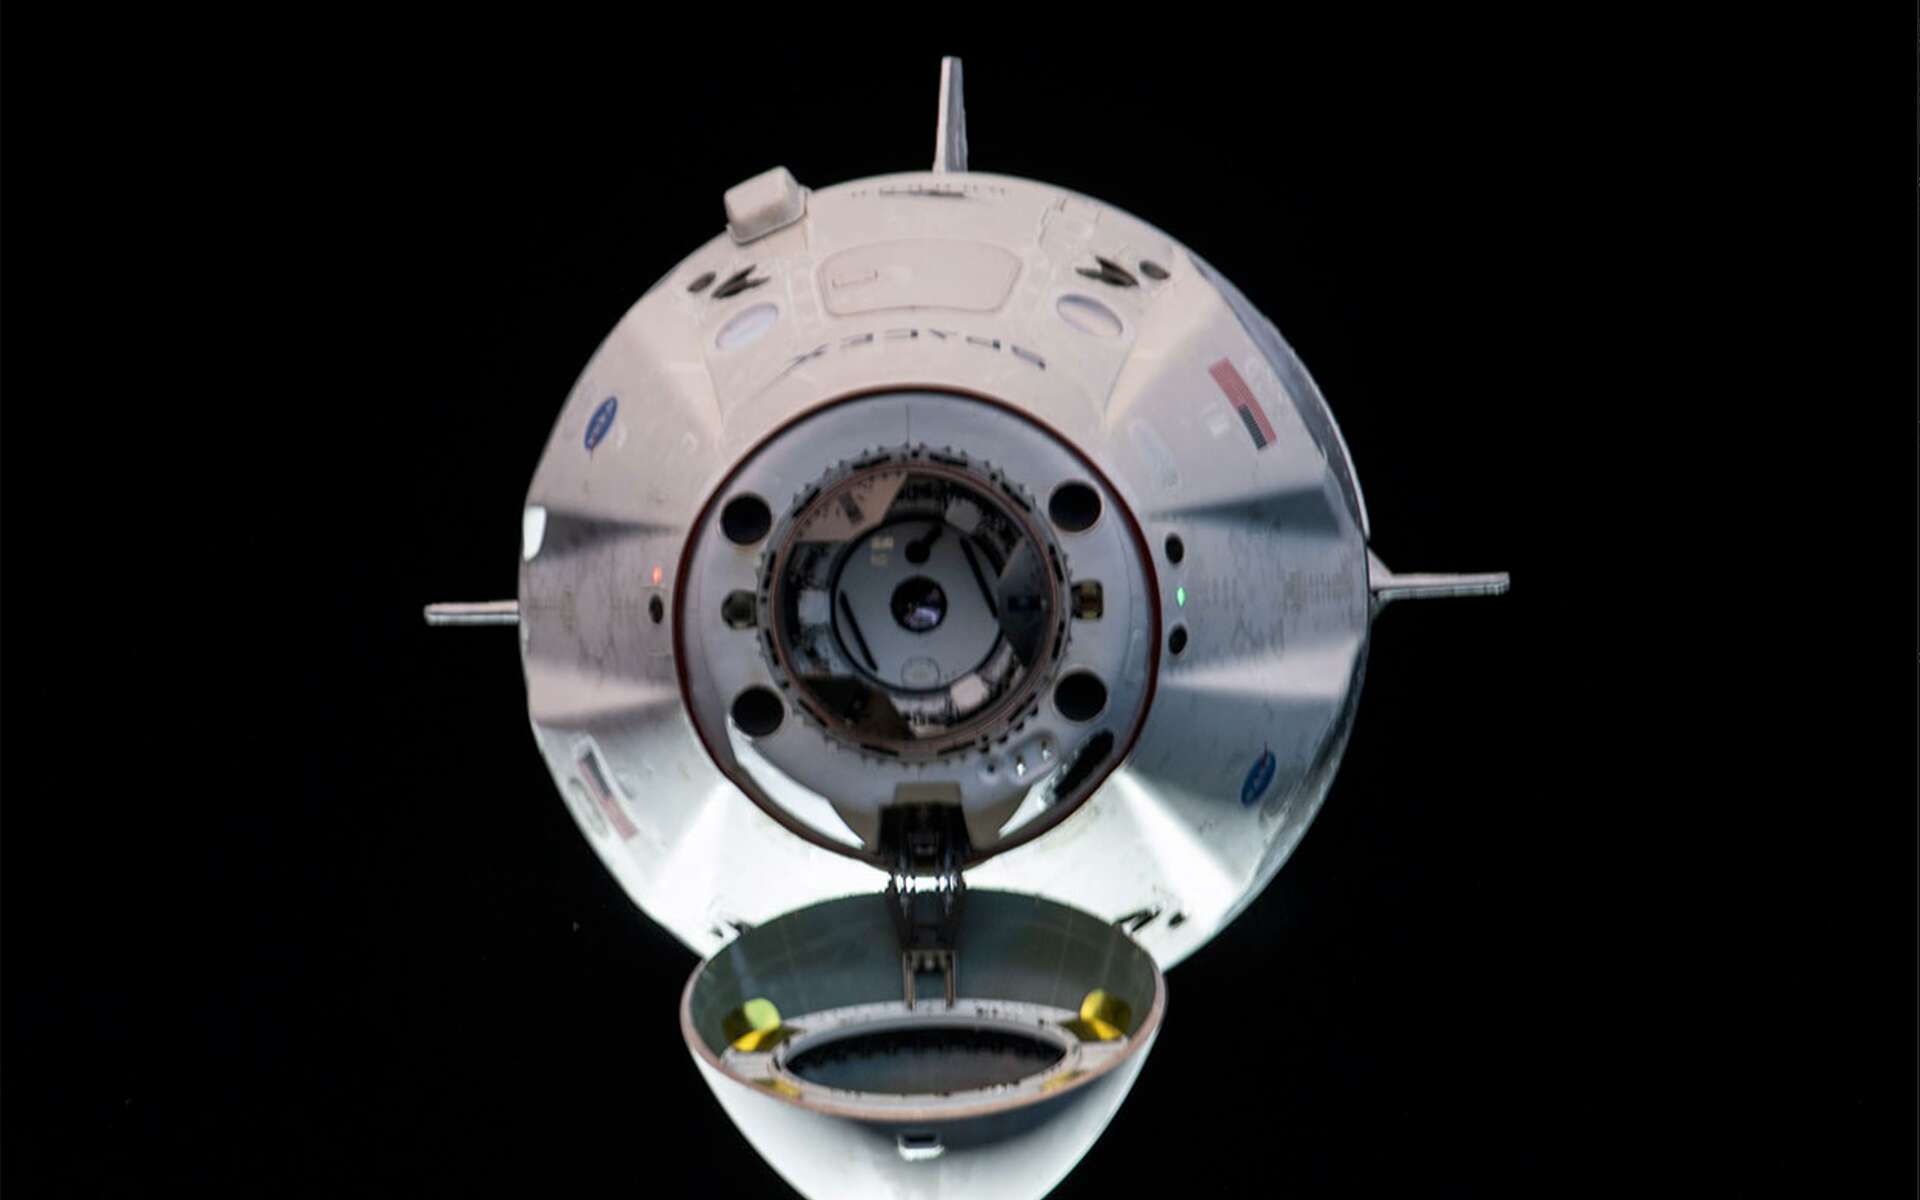 SpaceX : les deux astronautes de Crew Dragon sont arrivés dans la Station spatiale